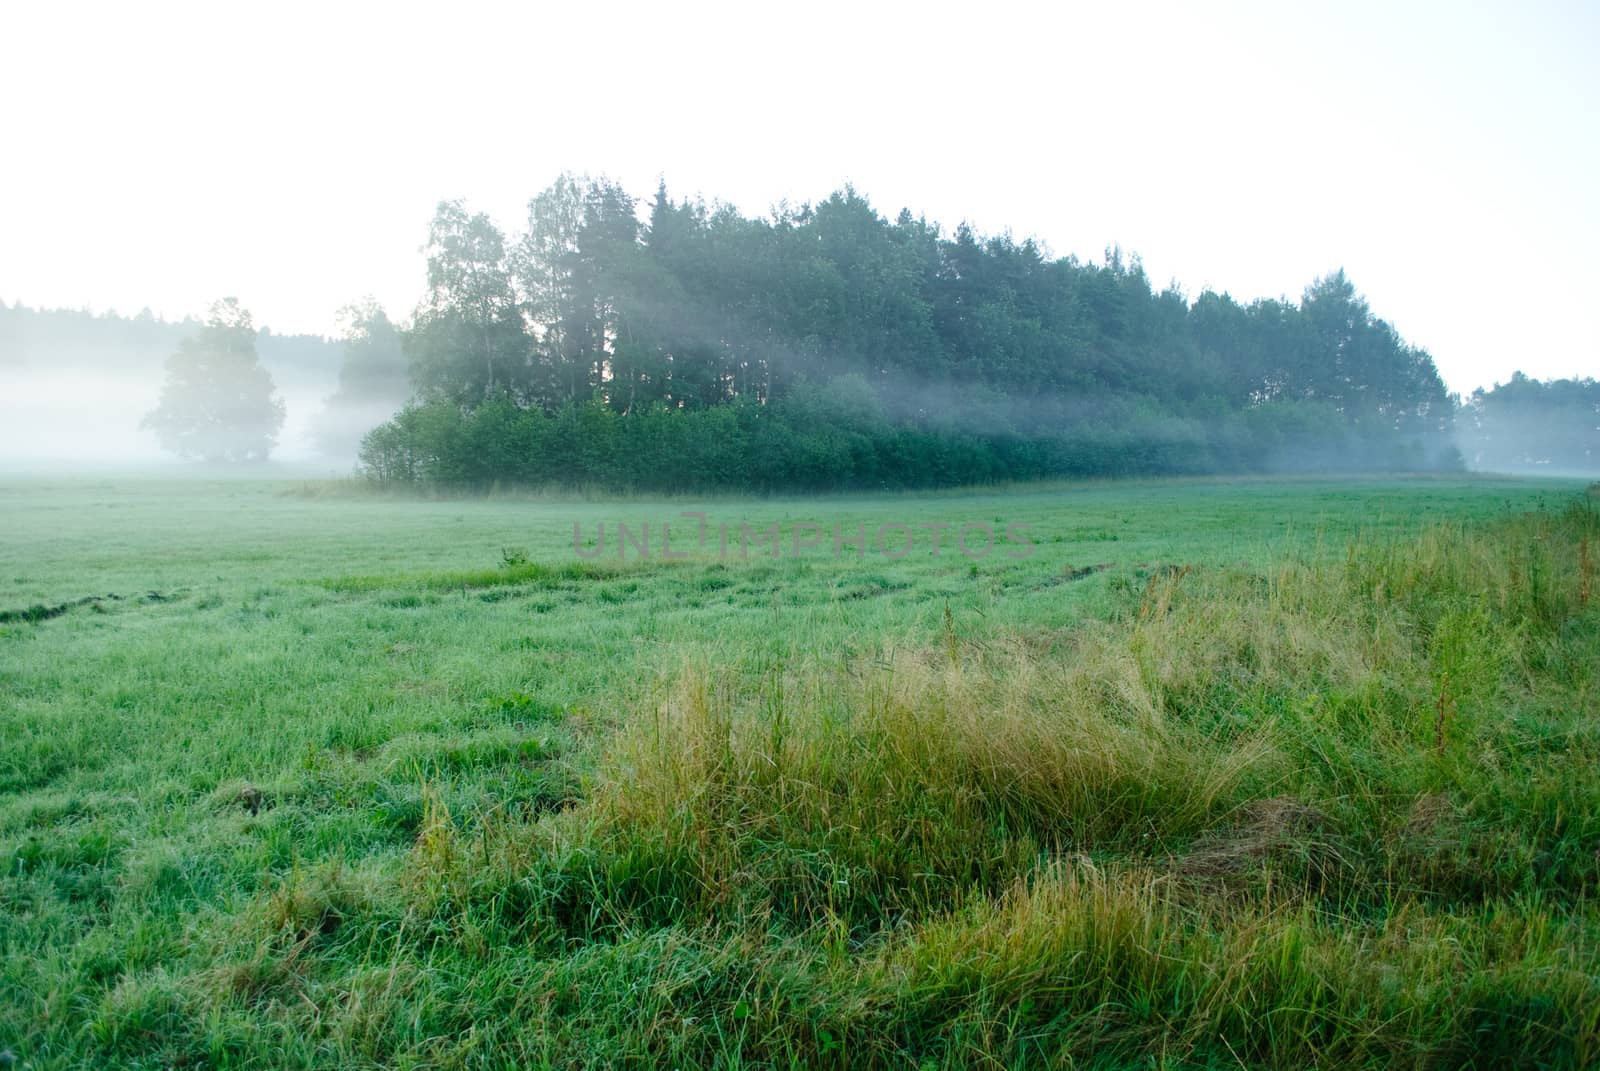 morning mist